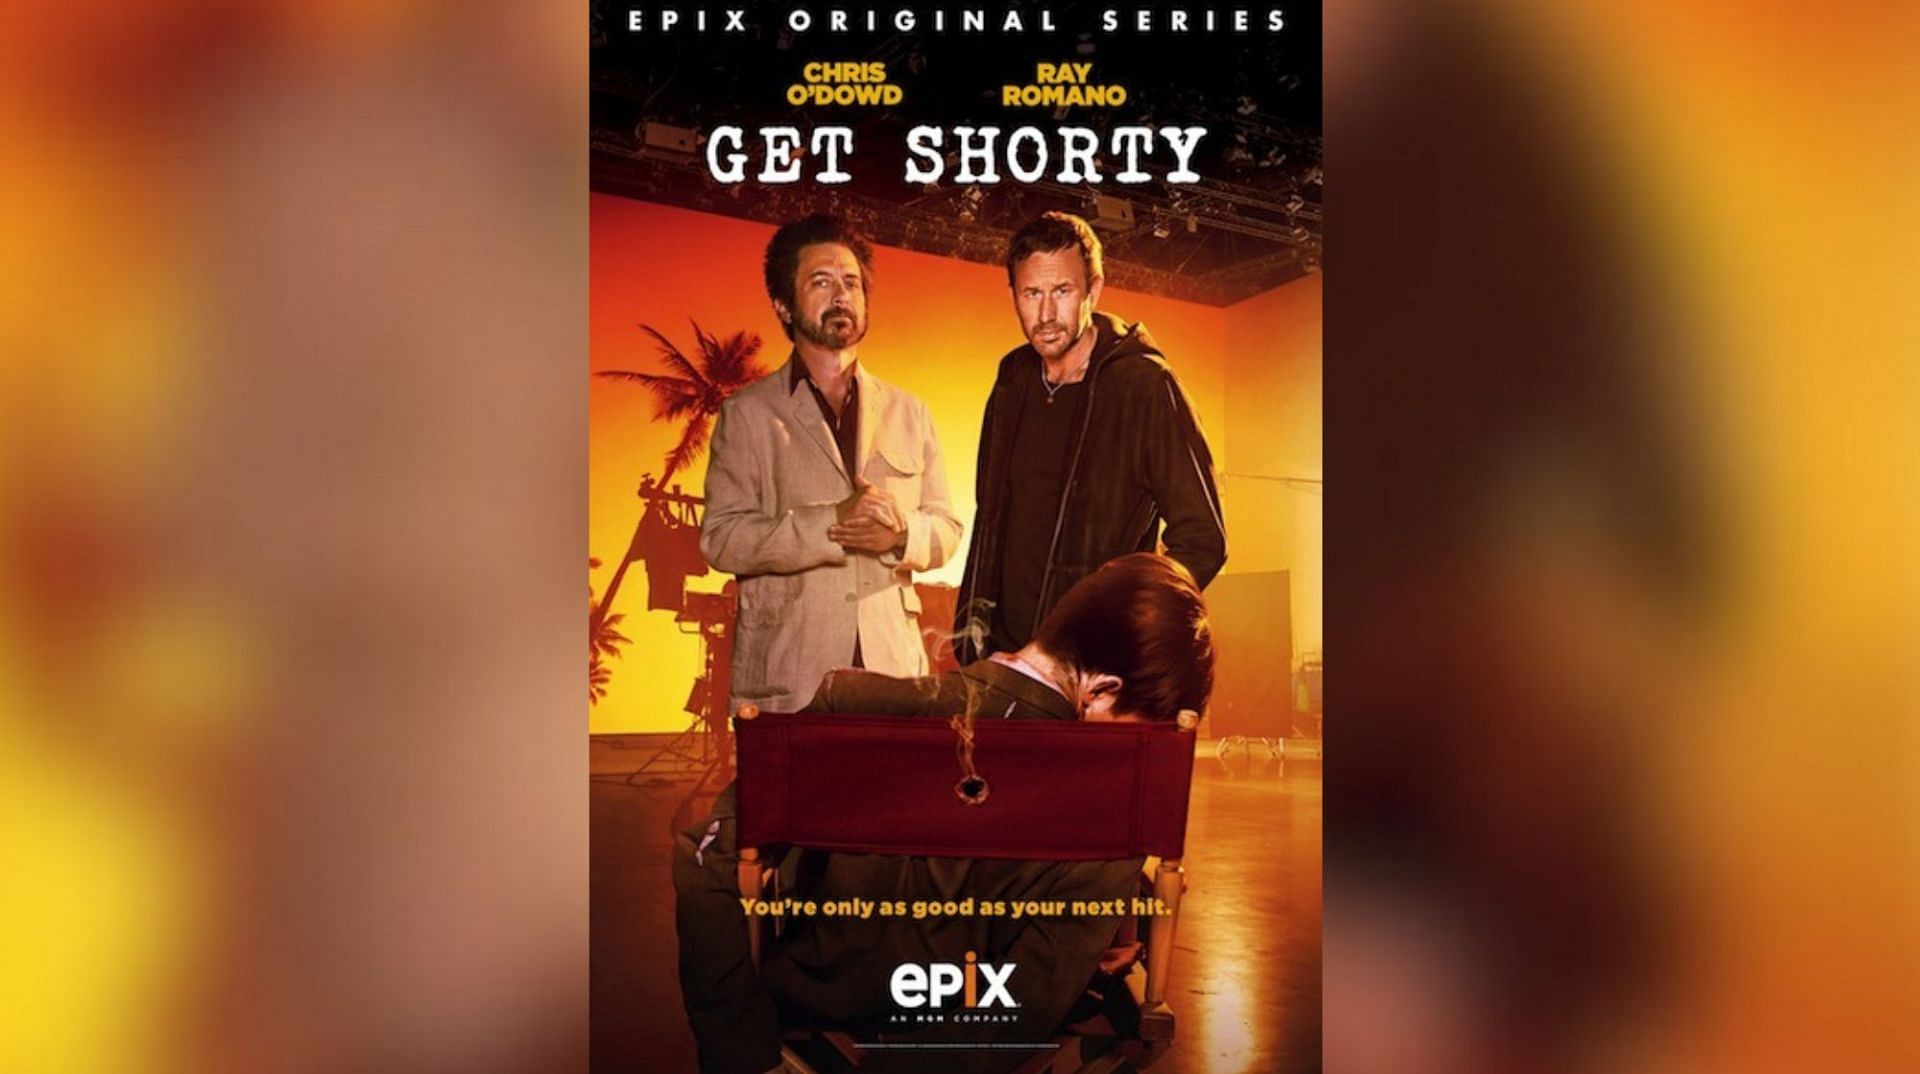 Get Shorty (Image via Epix)